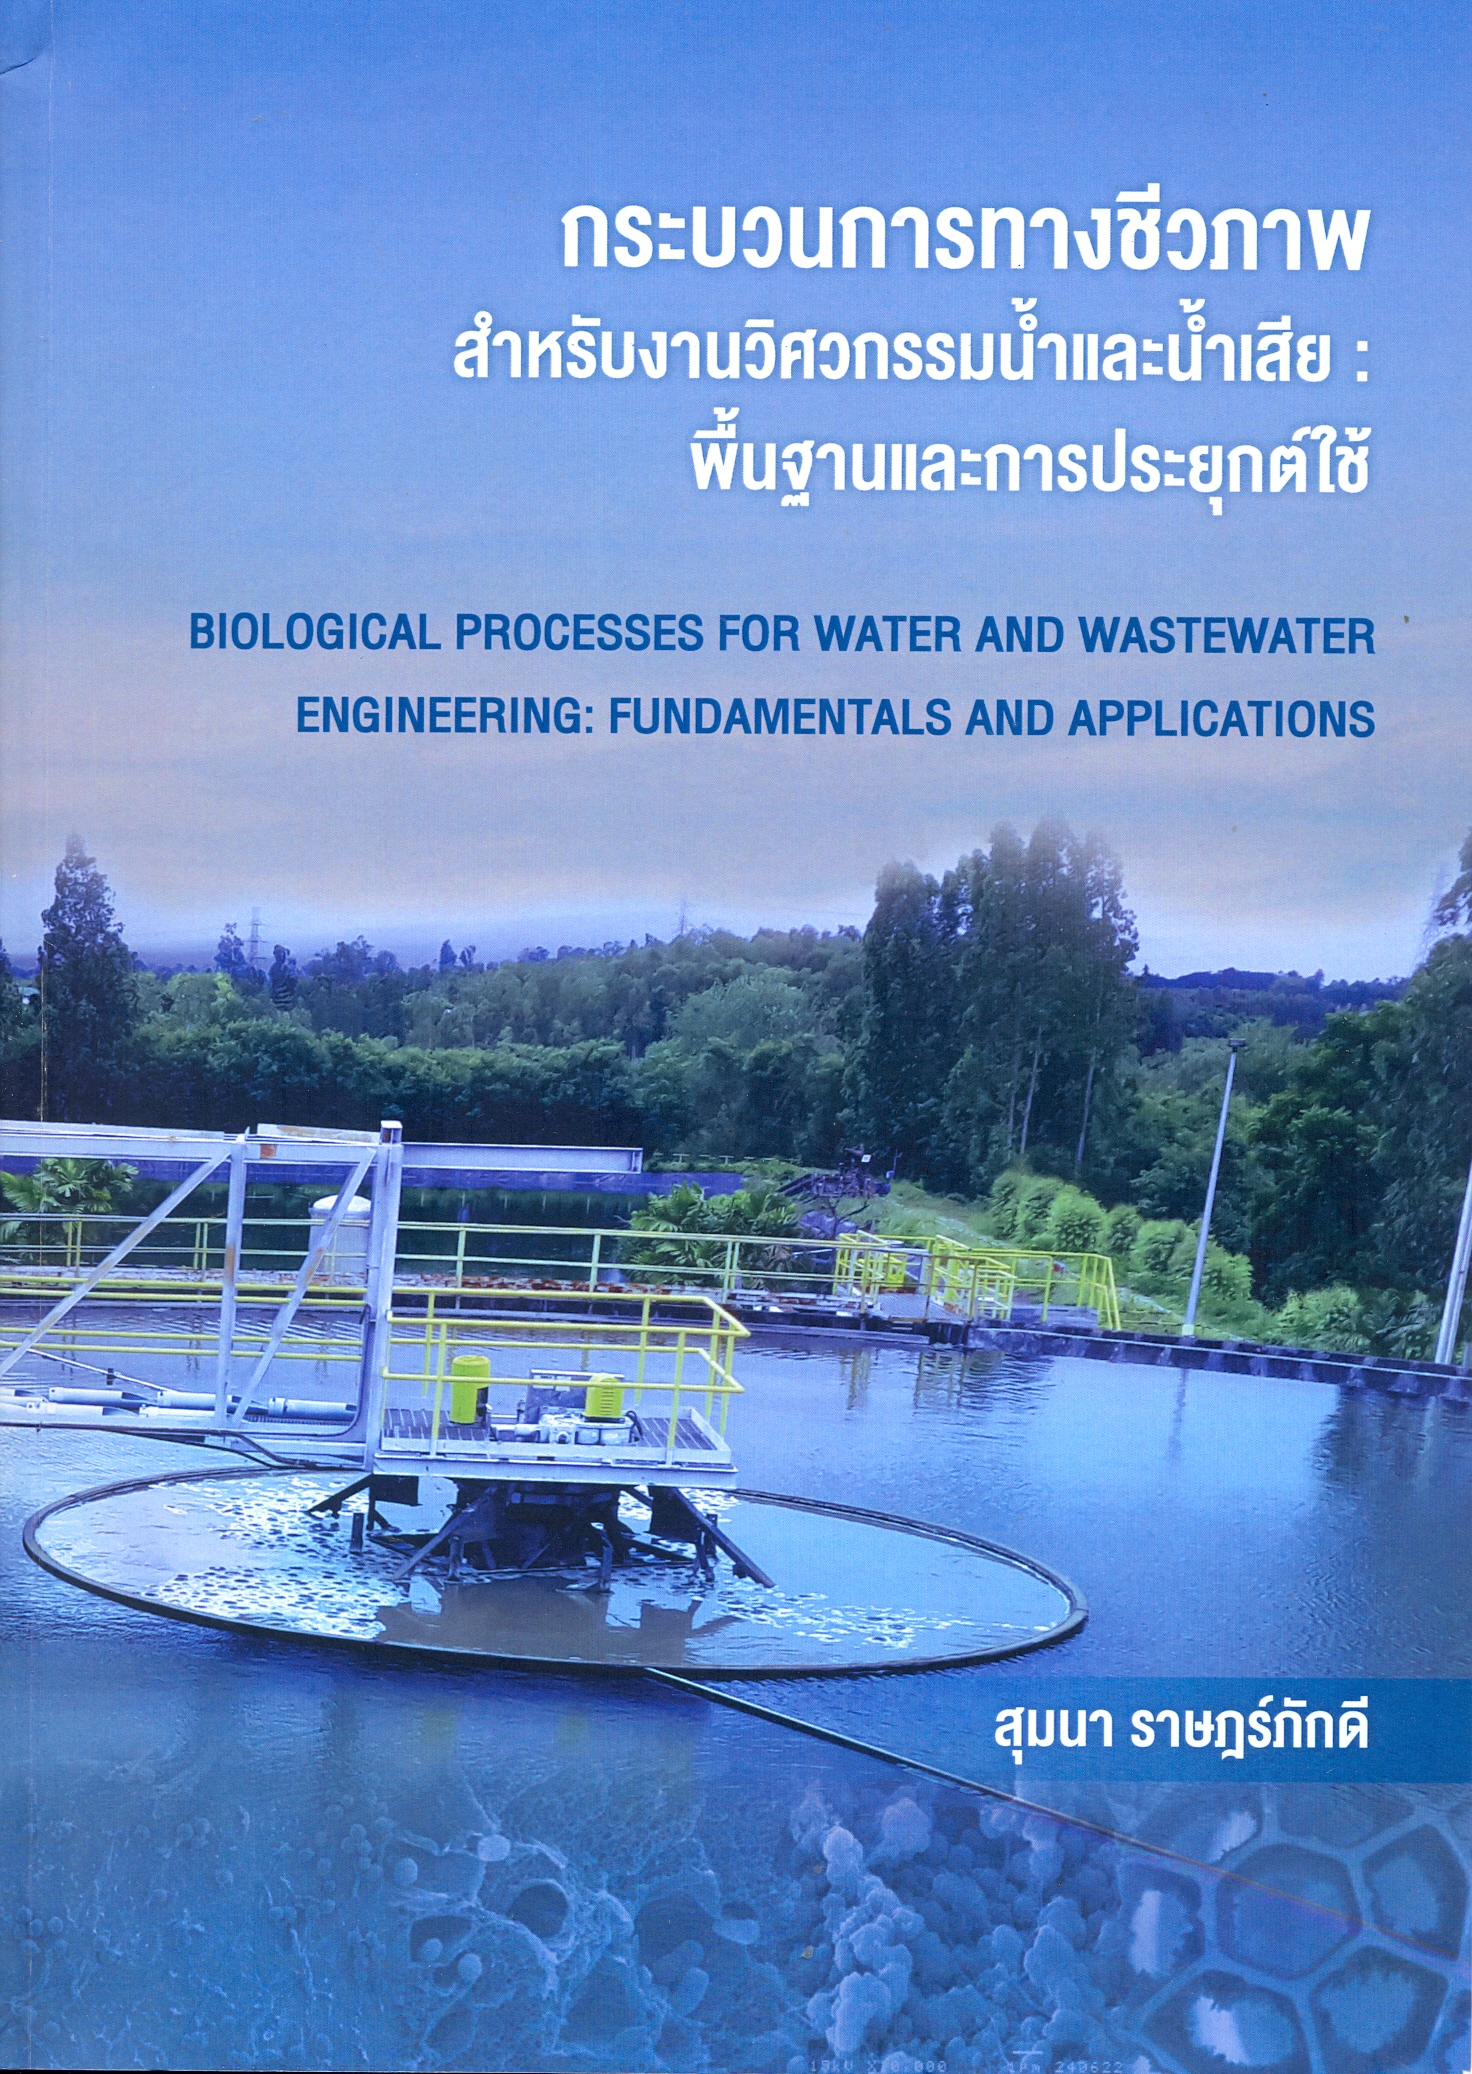 กระบวนการทางชีวภาพสำหรับงานวิศวกรรมน้ำและน้ำเสีย : พื้นฐานและการประยุกต์